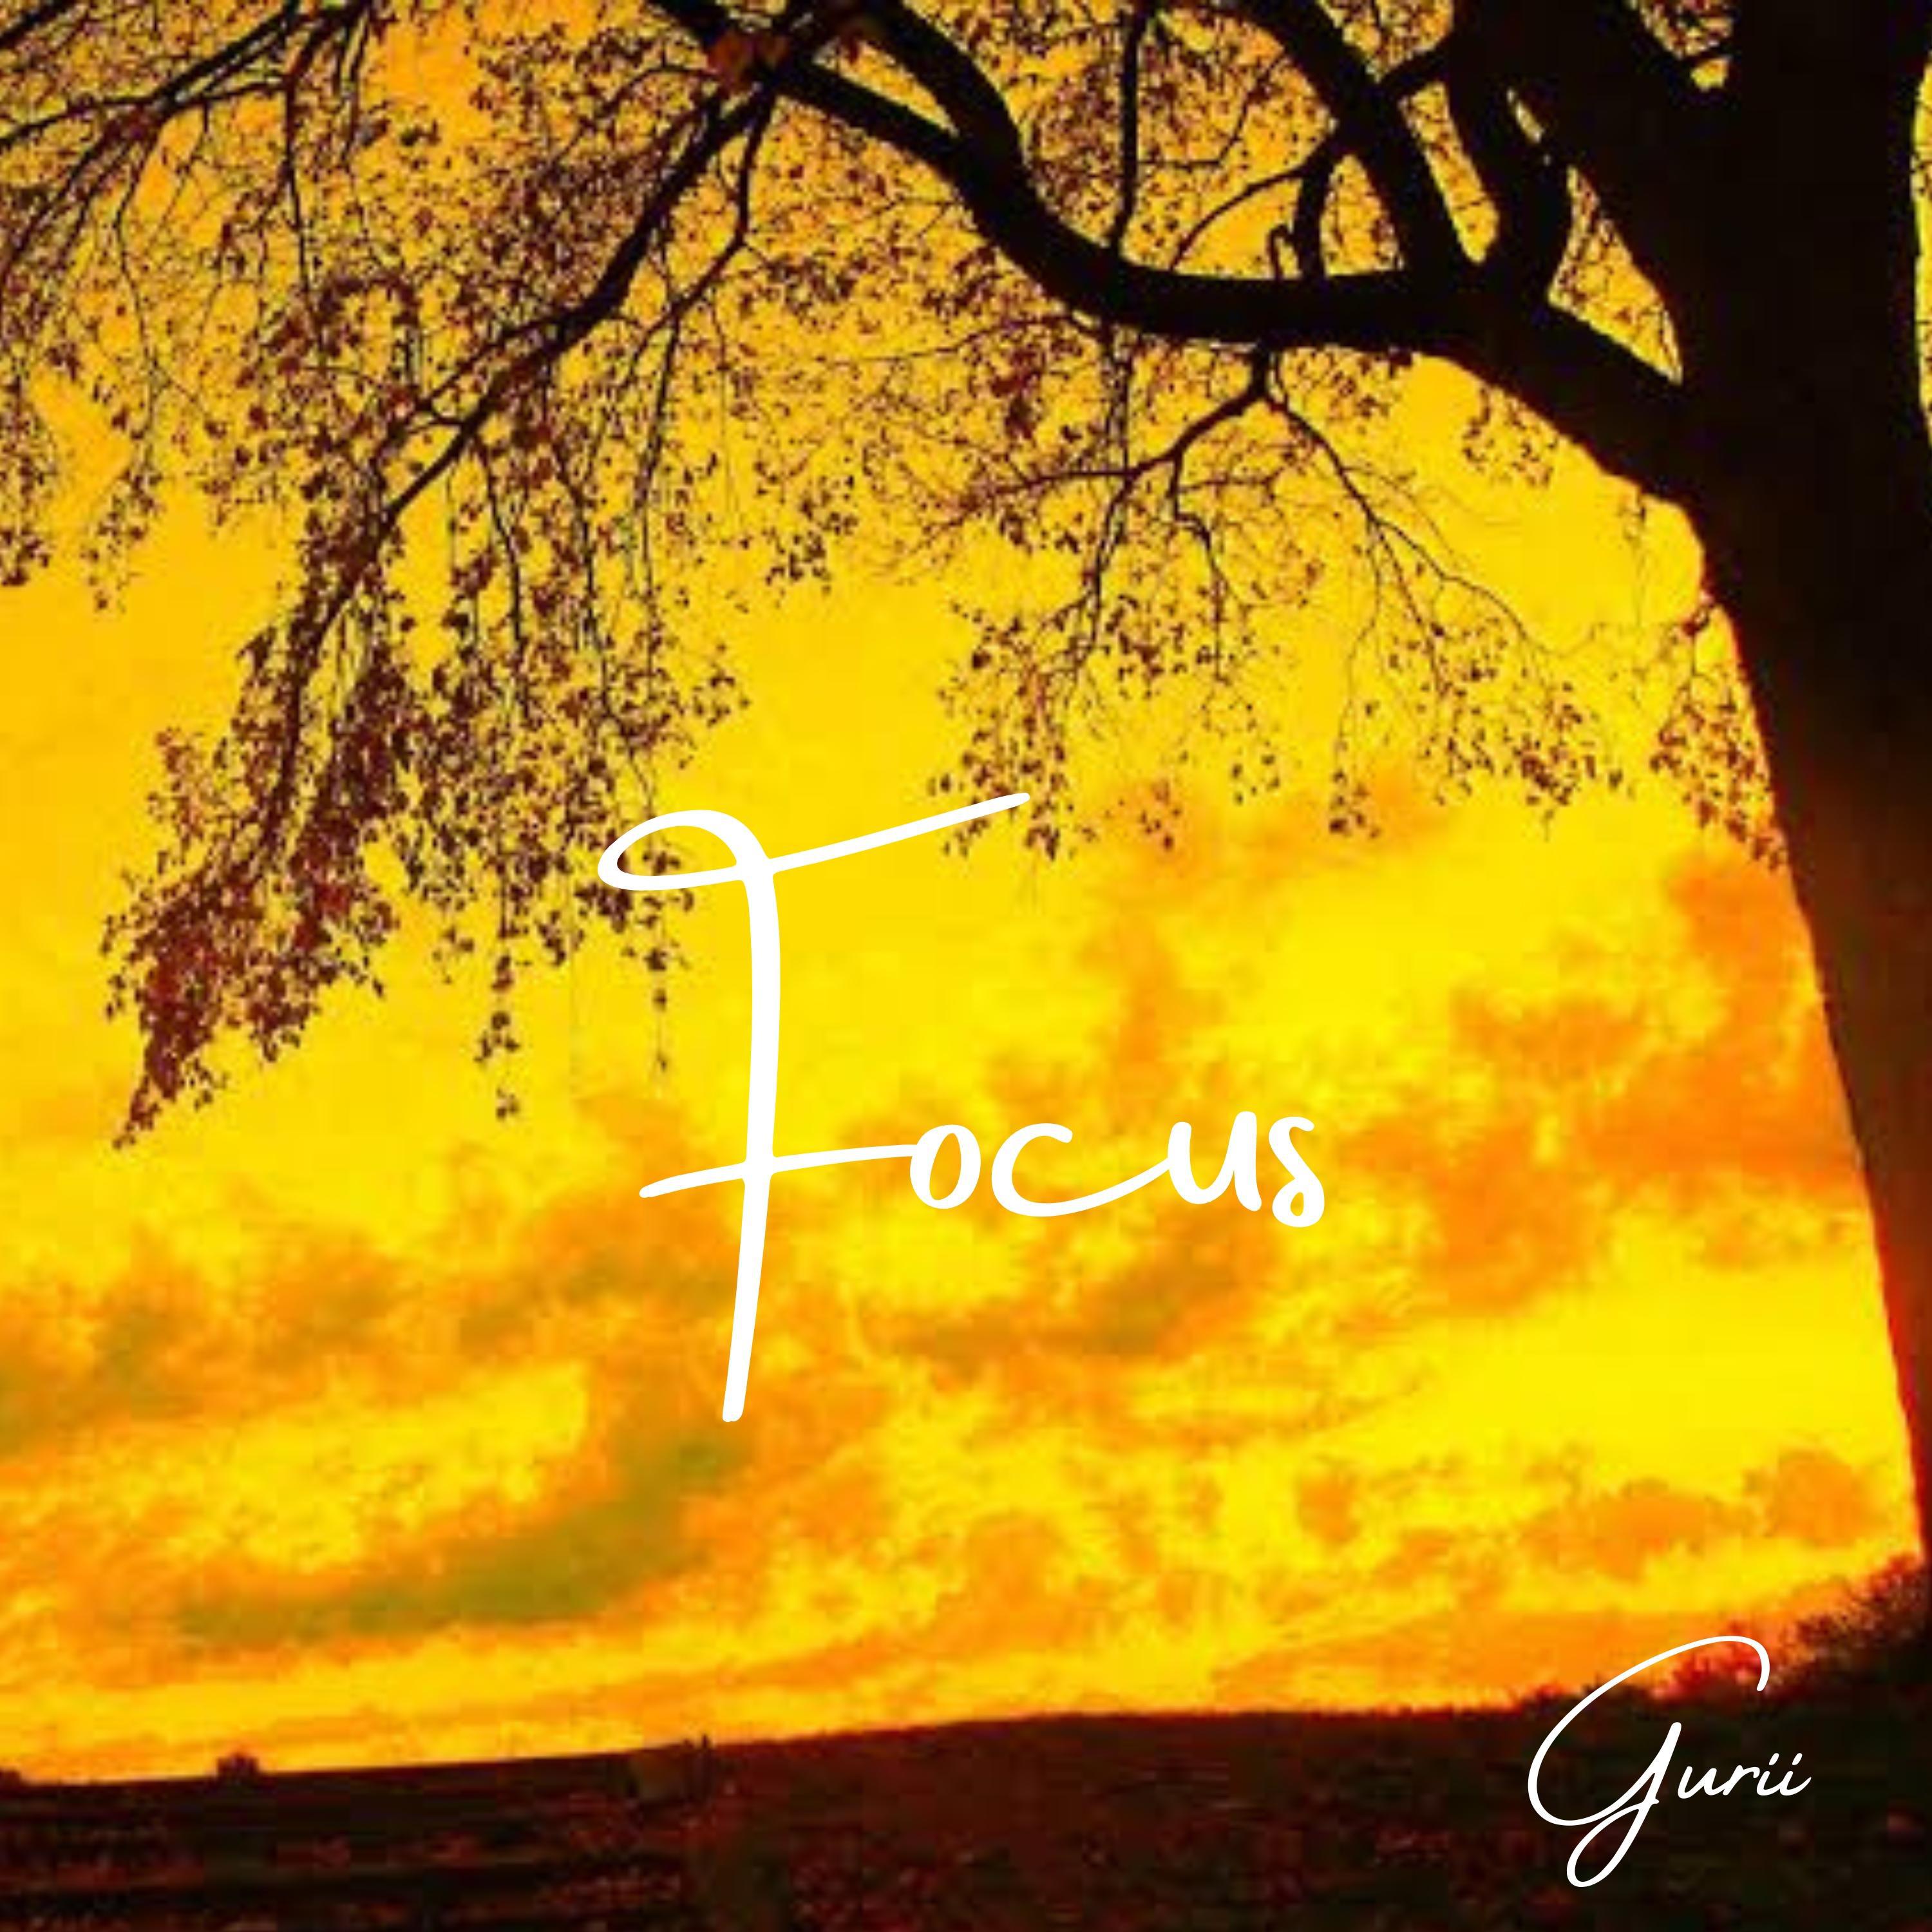 Gurii - Focus